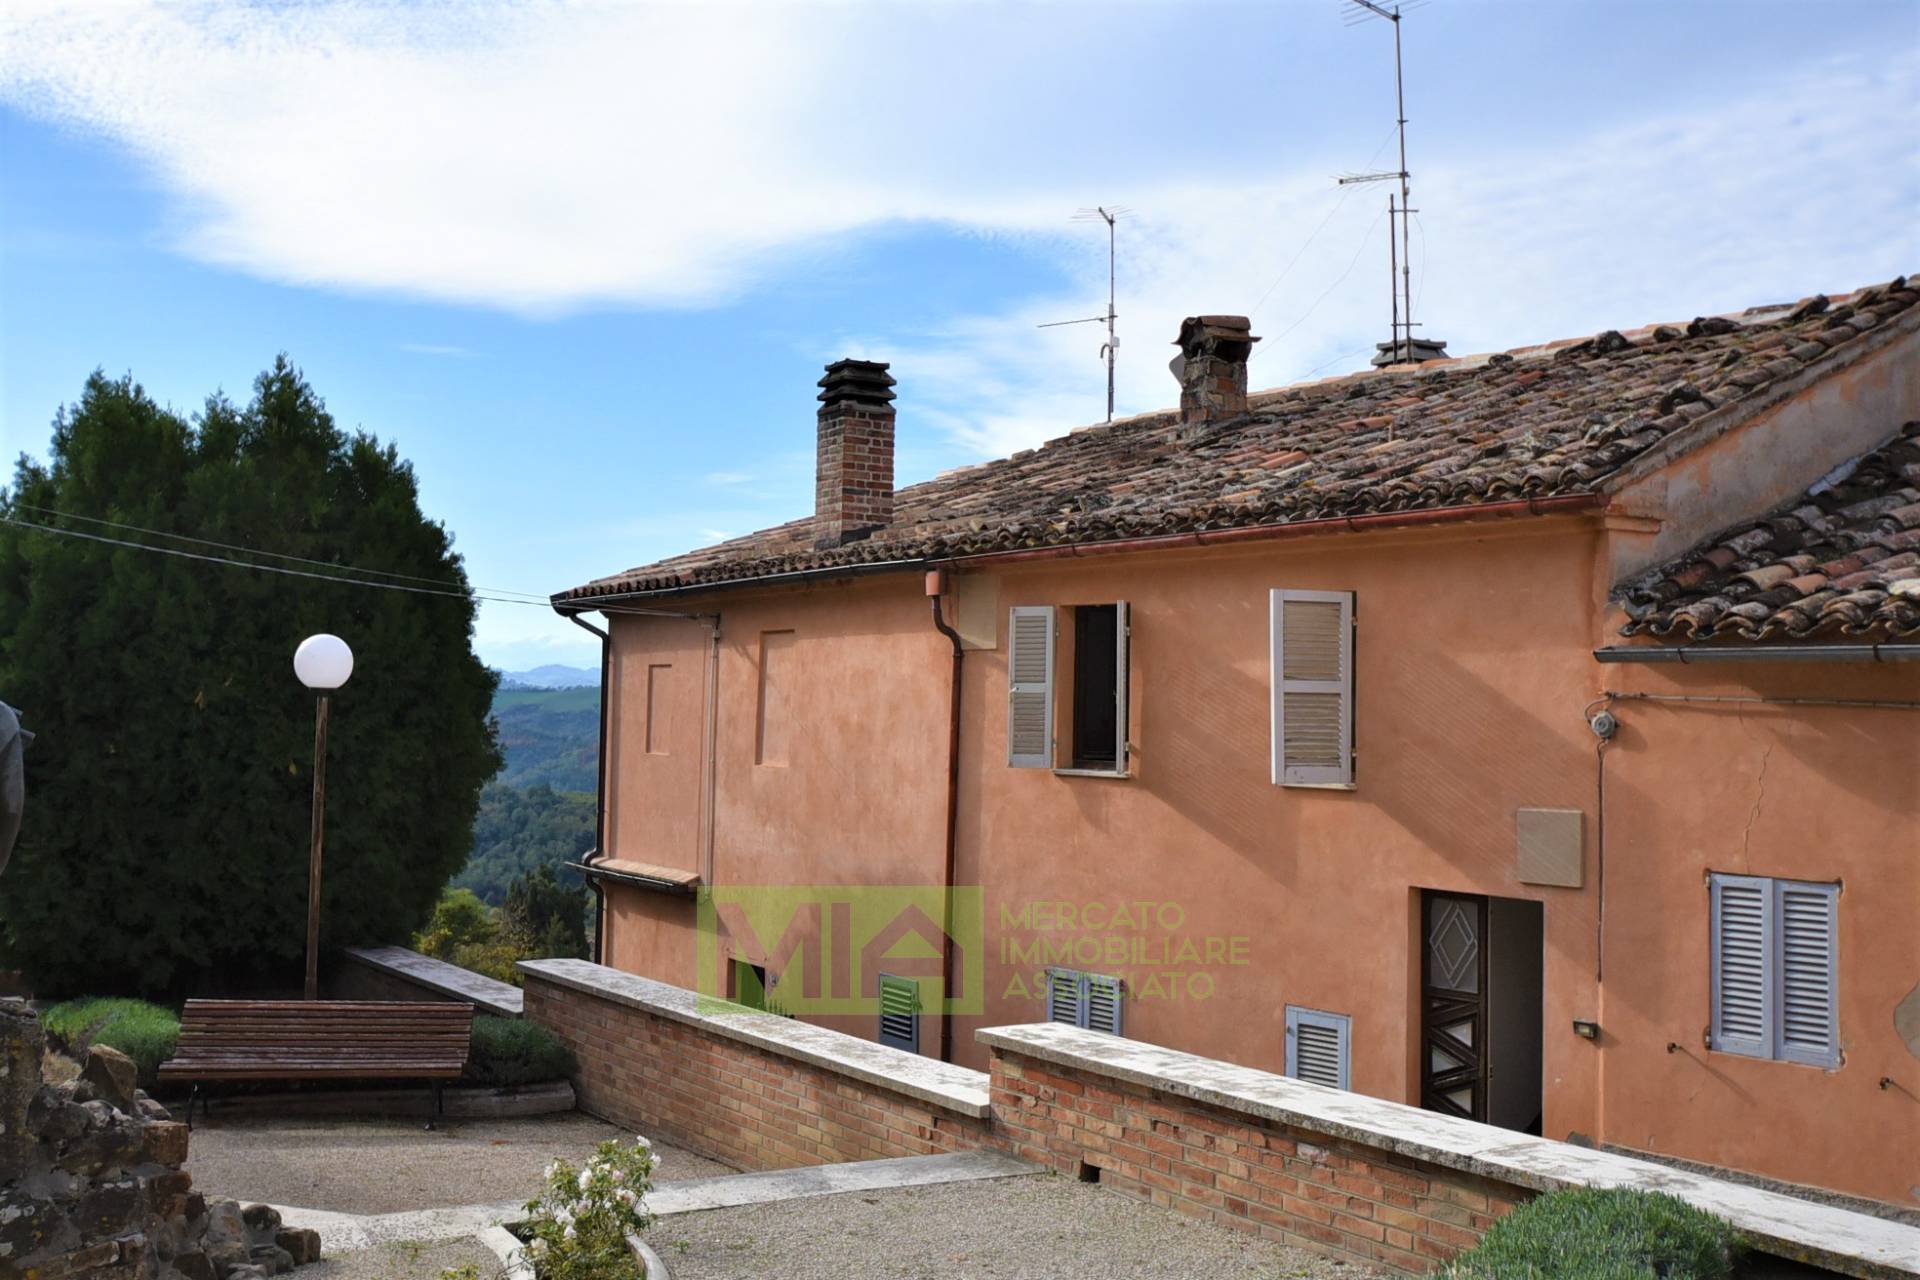 Appartamento in vendita a Sant'Angelo in Pontano, 2 locali, prezzo € 38.000 | PortaleAgenzieImmobiliari.it